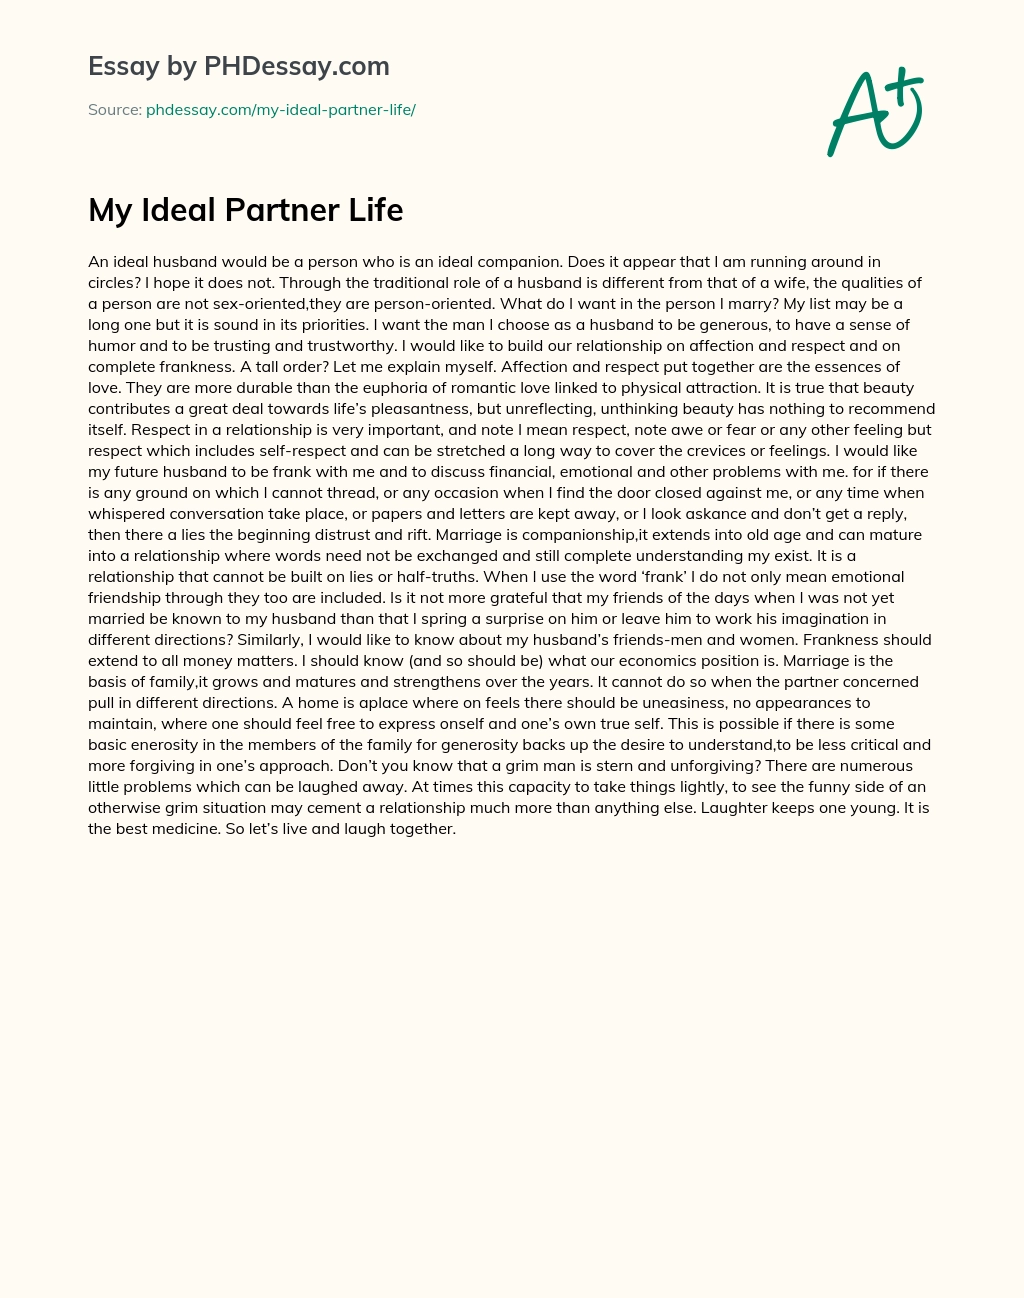 essay of life partner